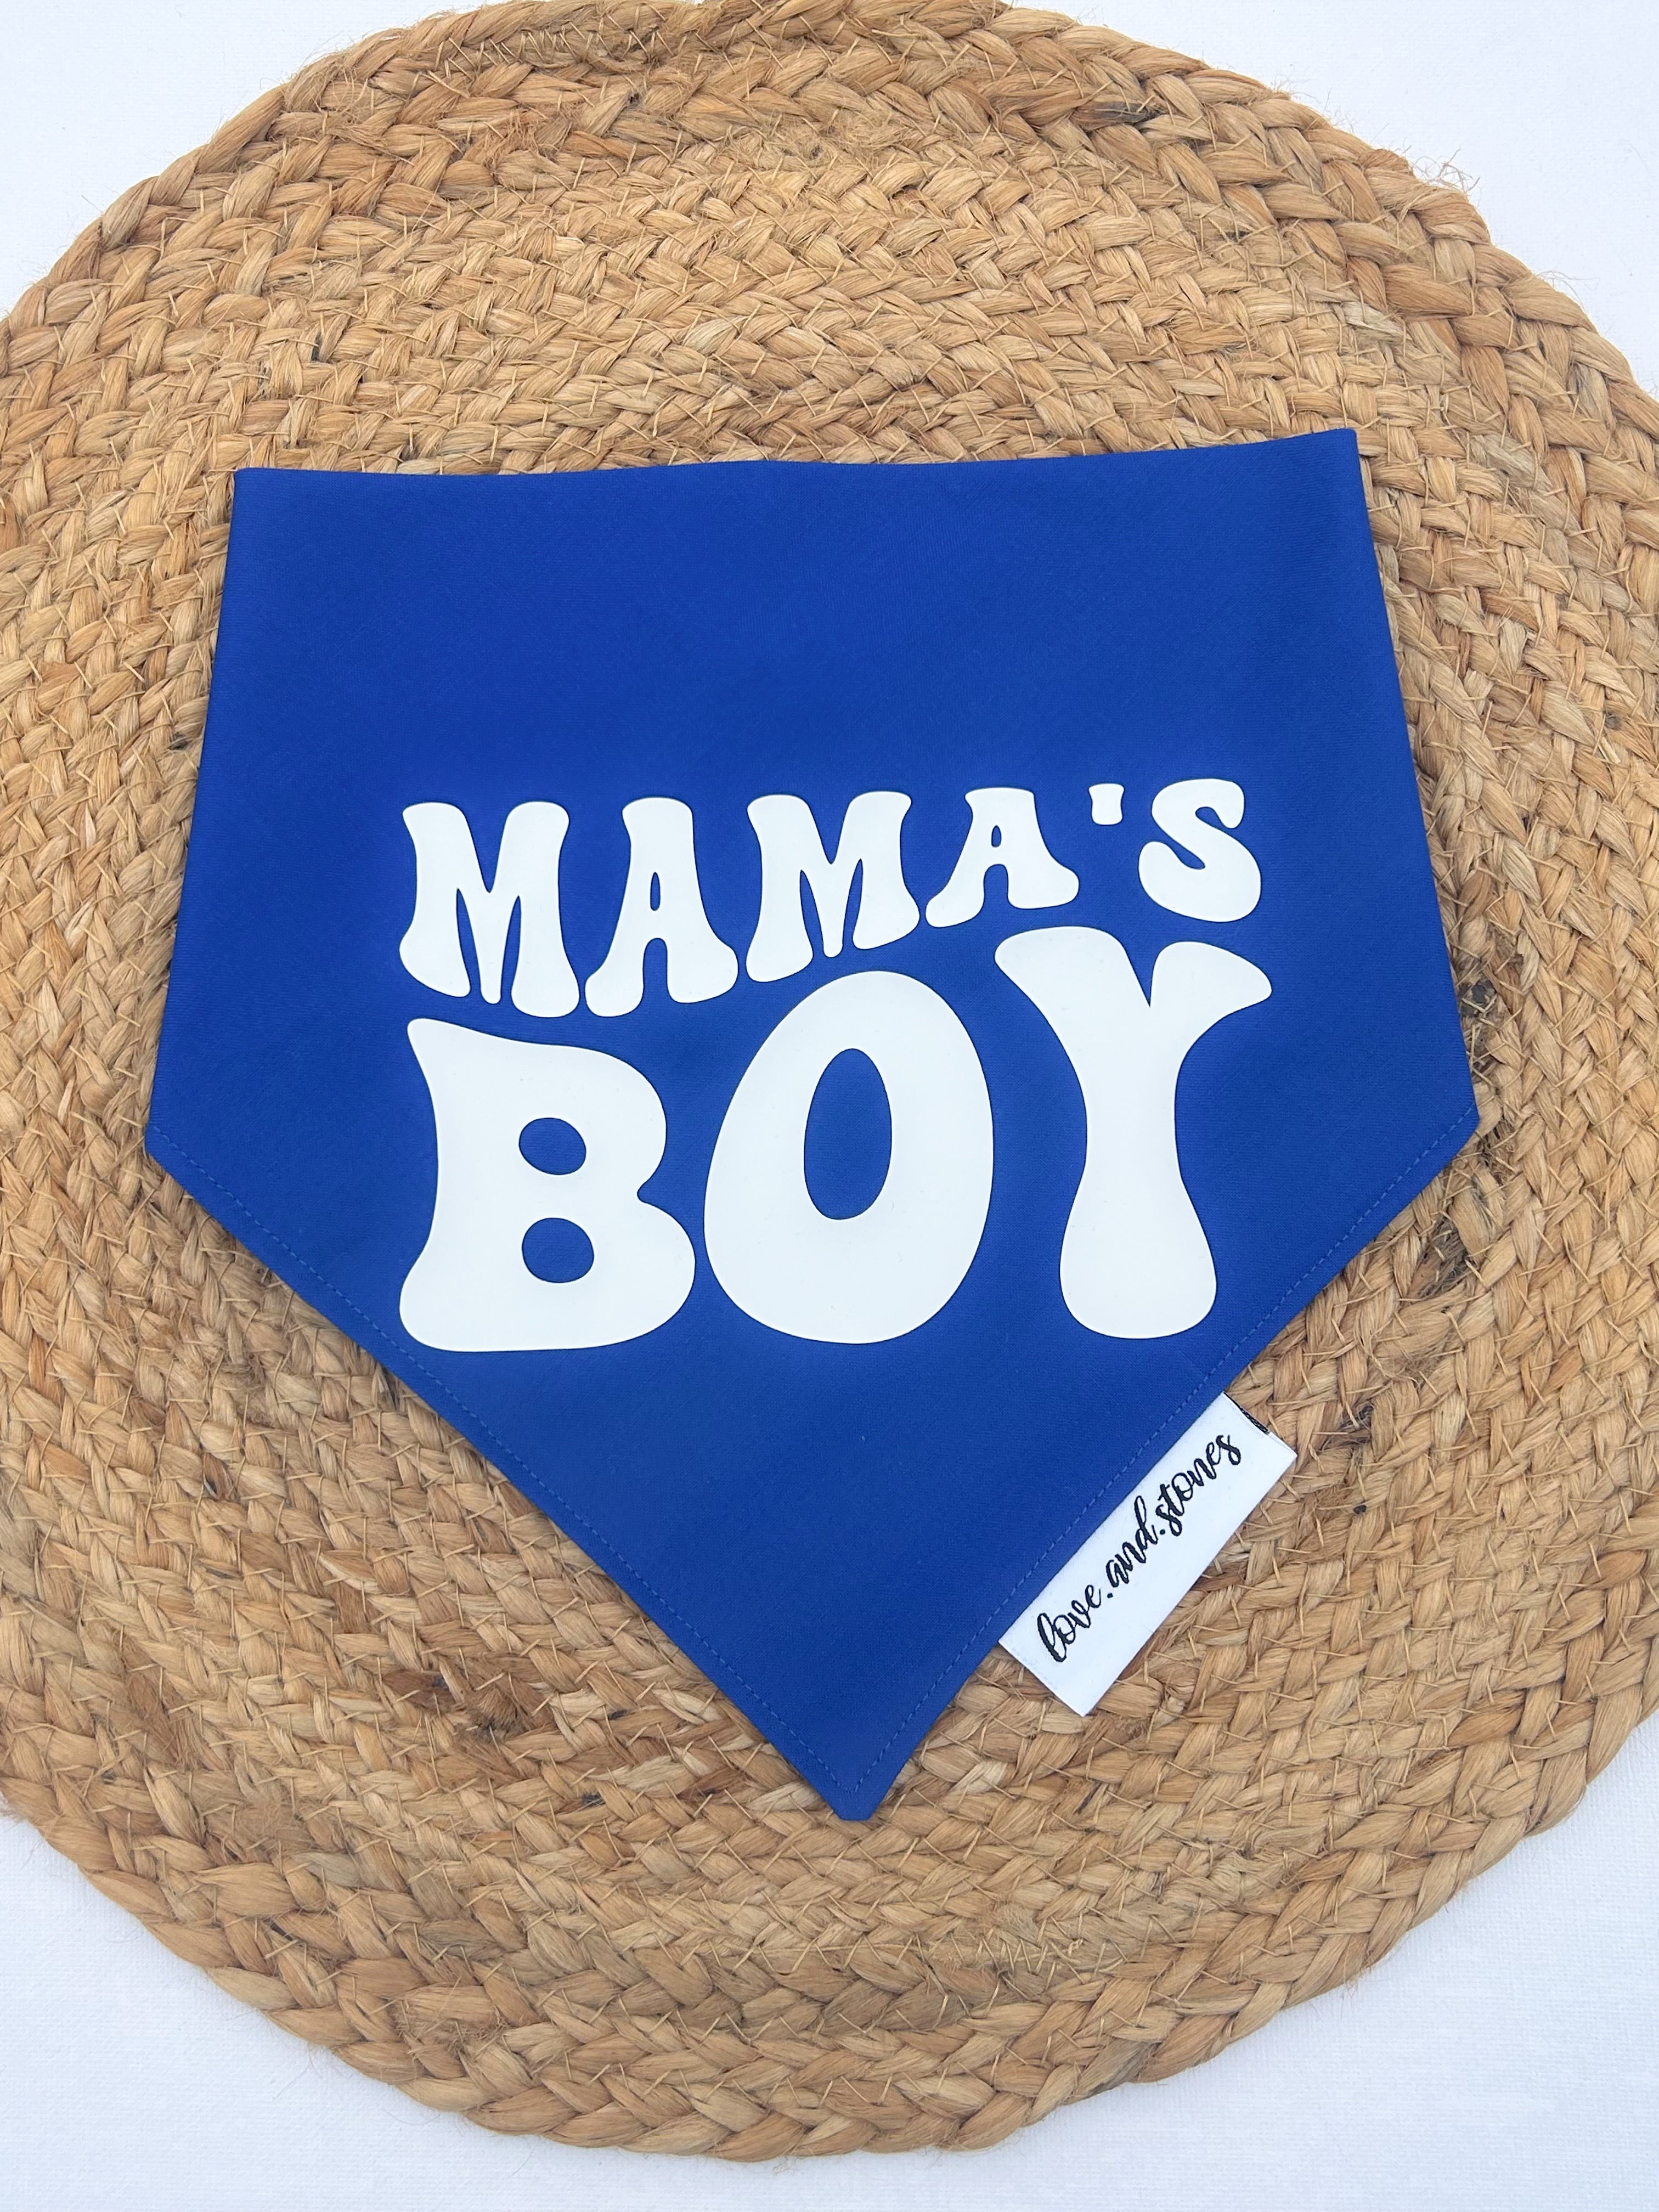 Mama’s boy